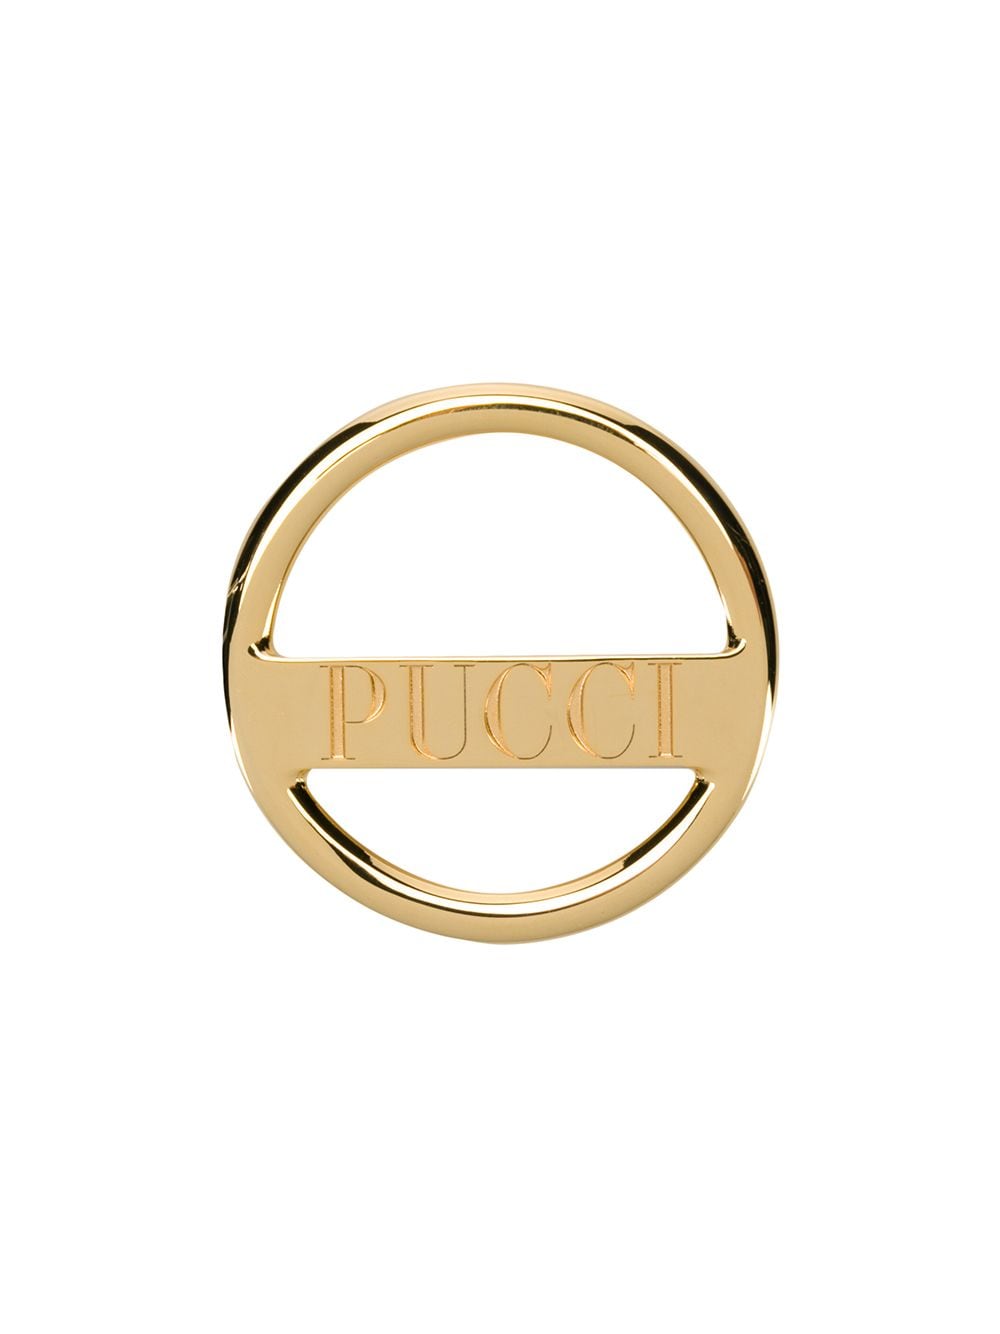 фото Emilio Pucci кольцо для шарфа с выгравированным логотипом